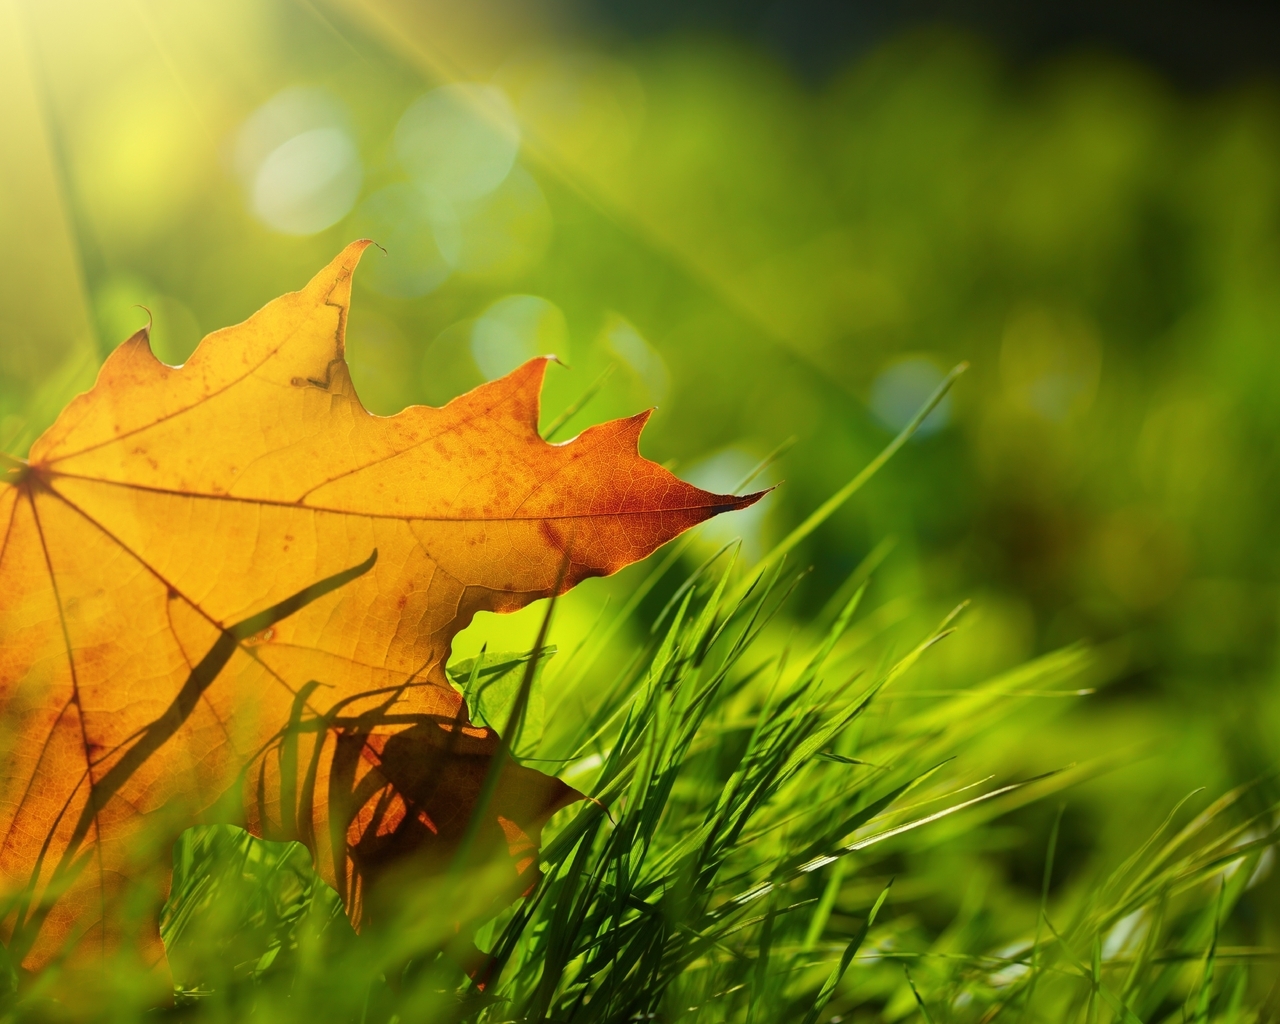 Картинка: Лист, жёлтый, осень, трава